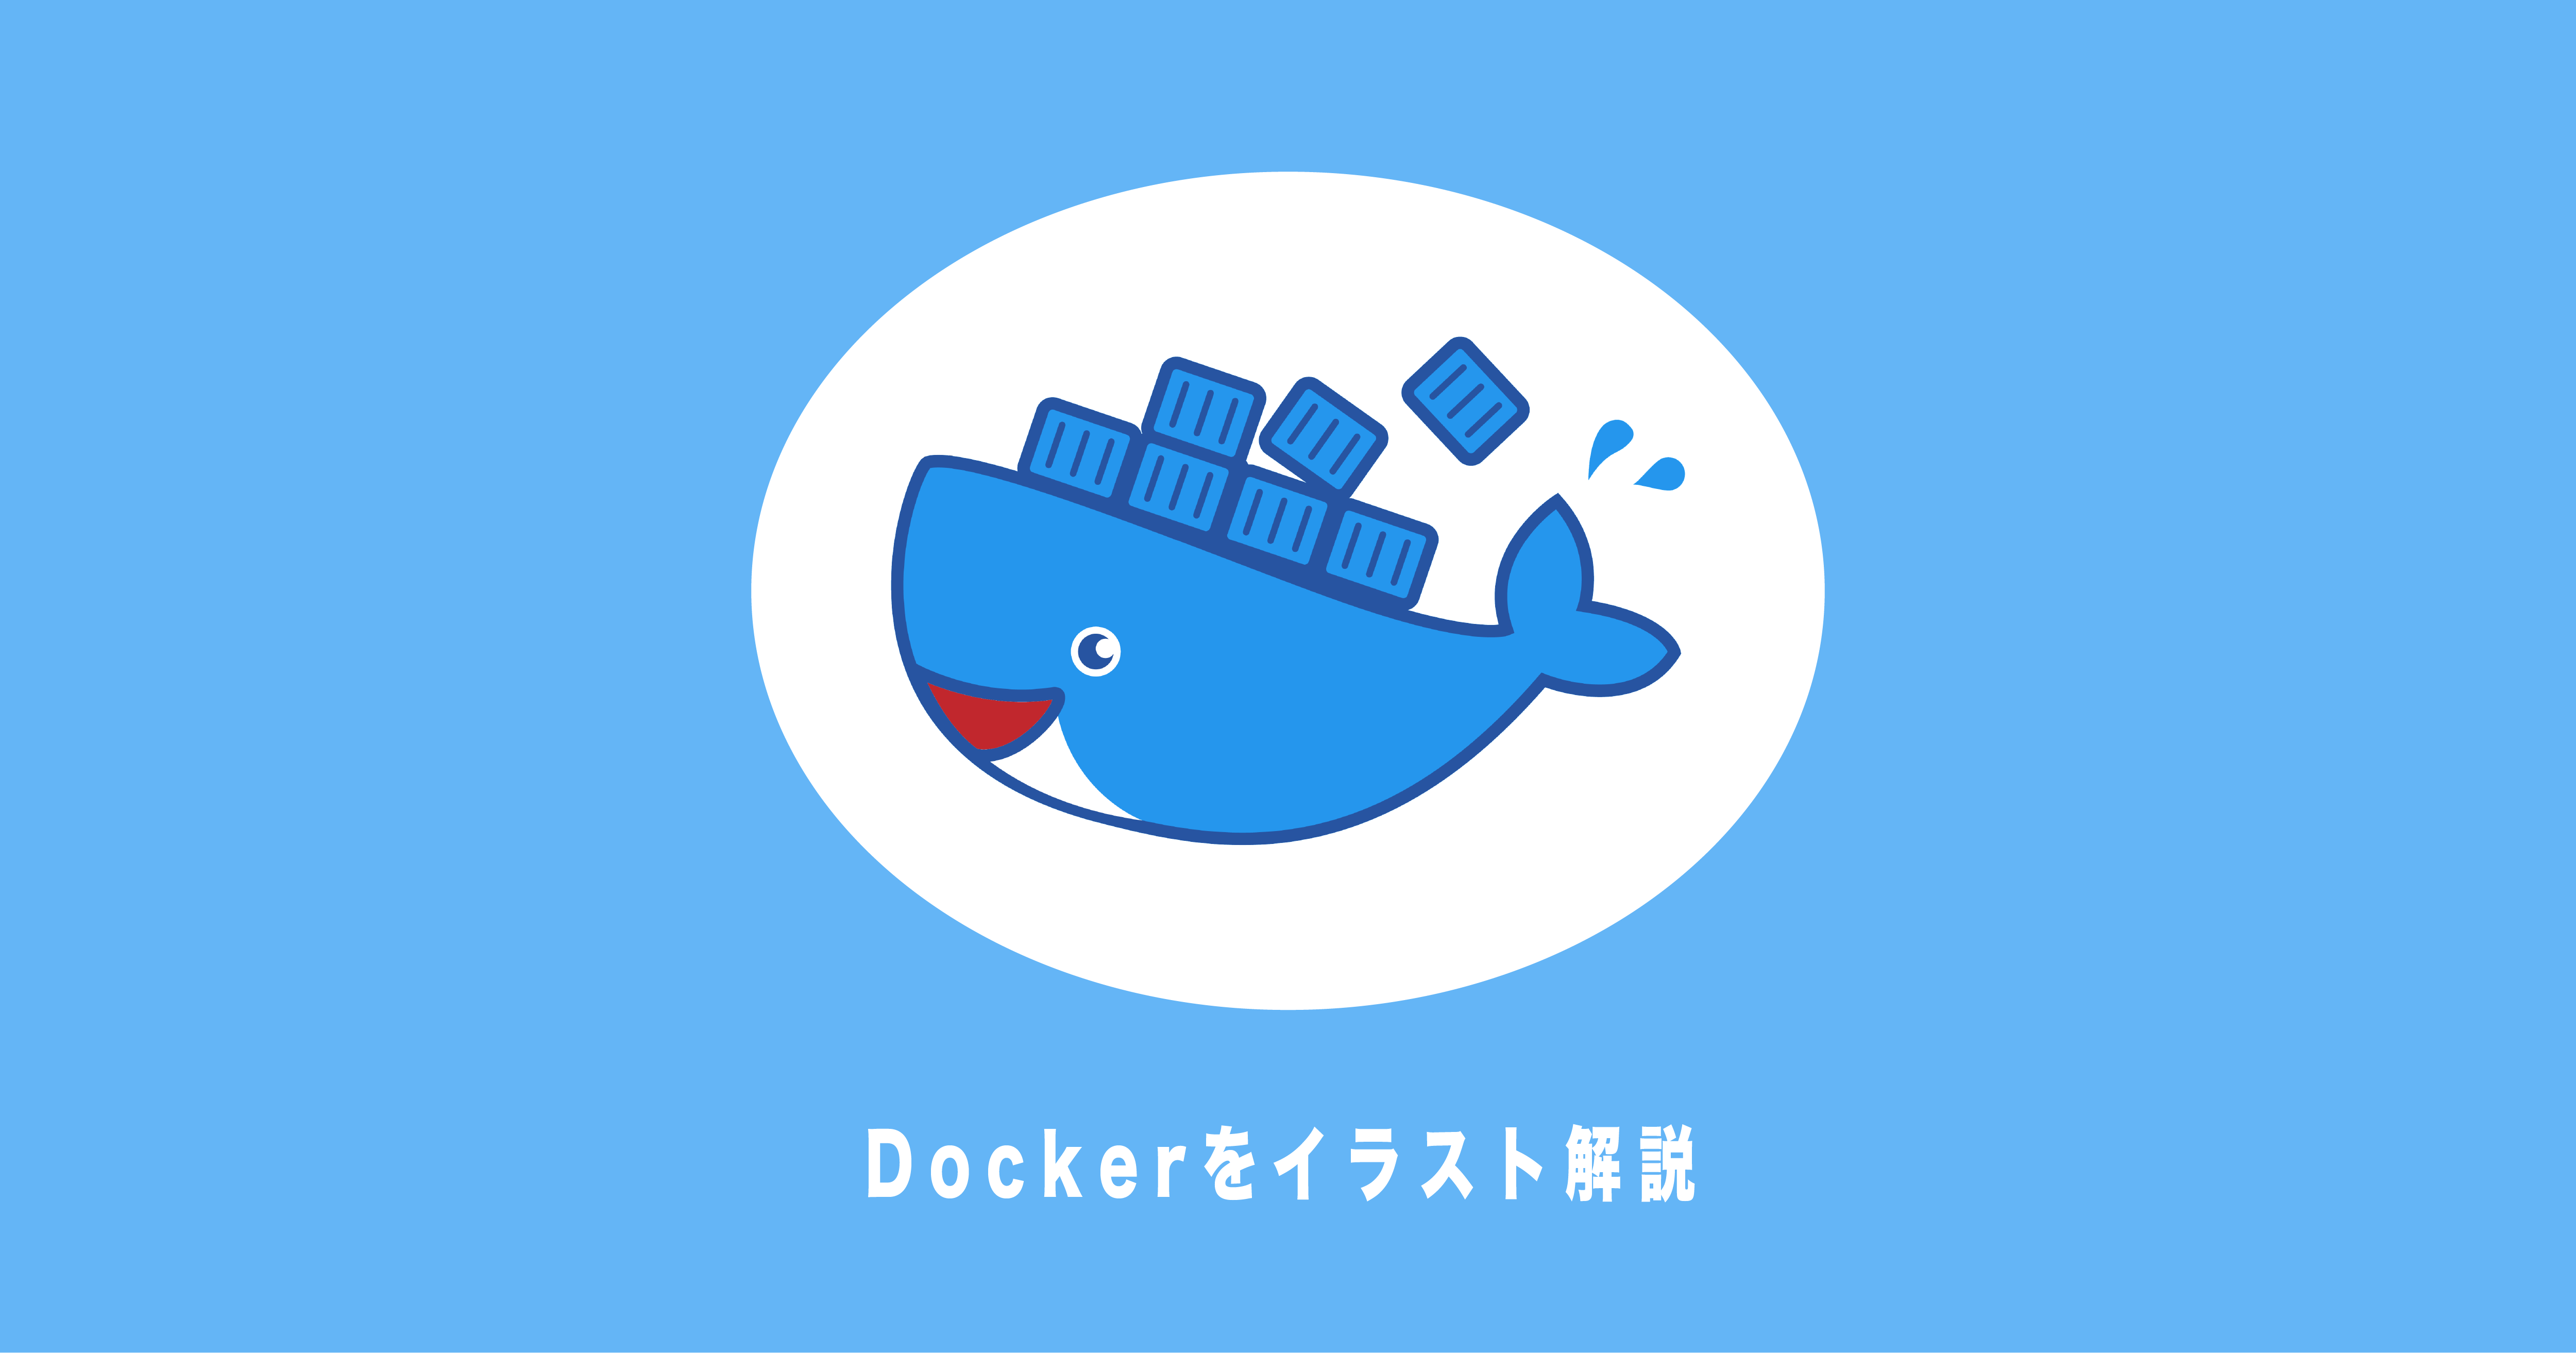 Dockerをイラスト解説